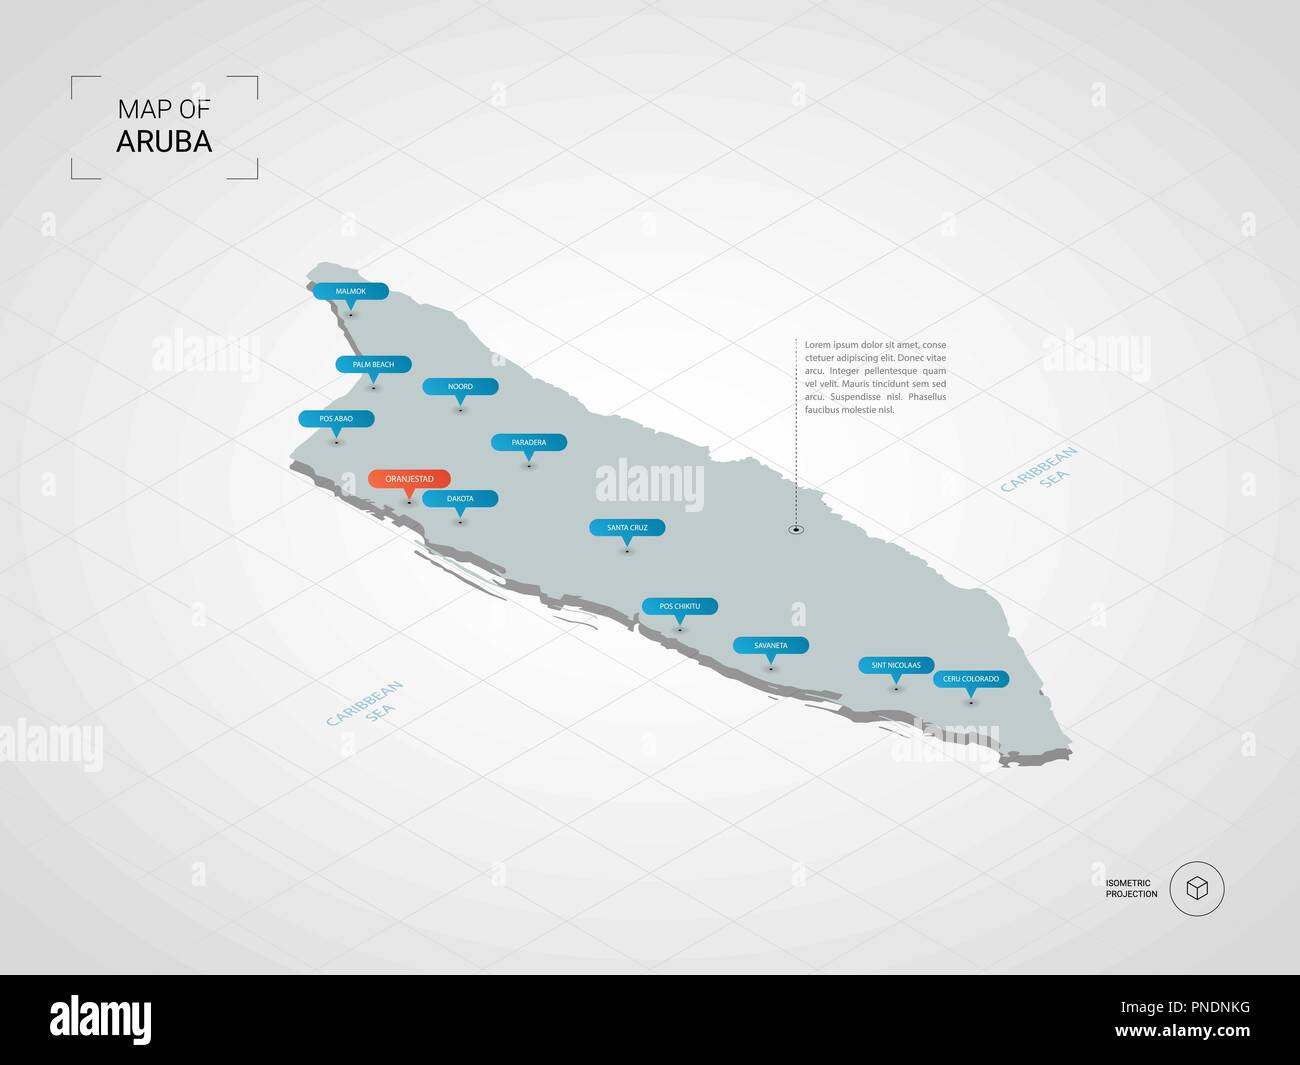 3D isométrique Aruba carte. Carte vectorielle illustration stylisée avec les villes, les frontières, les capitaux, les divisions administratives et marques ; pointeur backgrou gradient Illustration de Vecteur